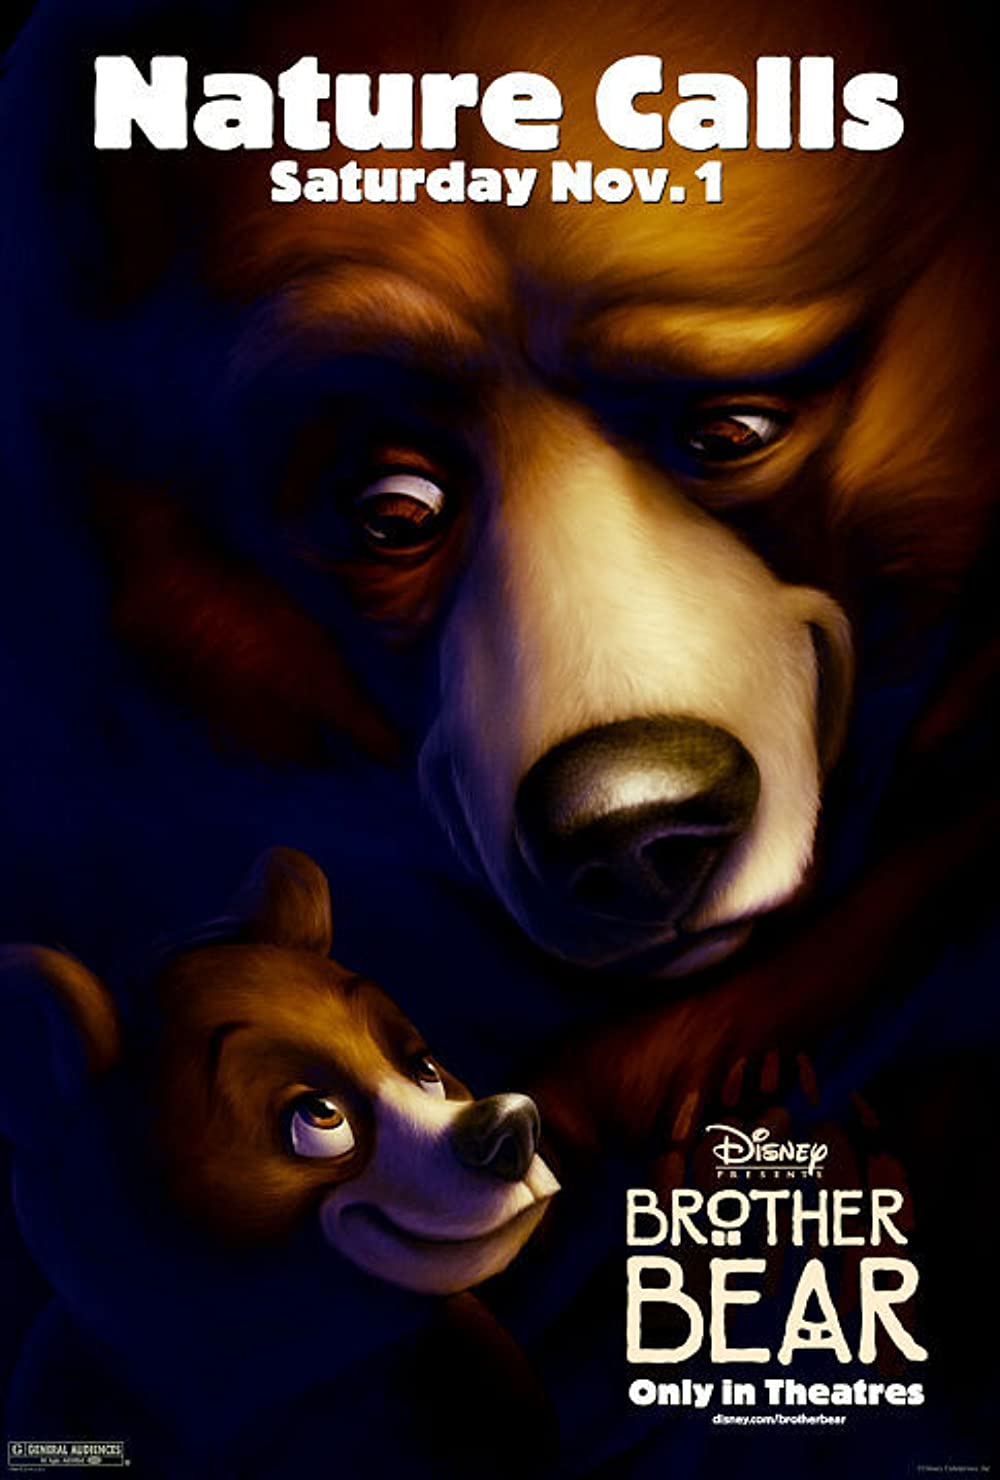 ดูหนังออนไลน์ฟรี Brother Bear (2003) มหัศจรรย์หมีผู้ยิ่งใหญ่